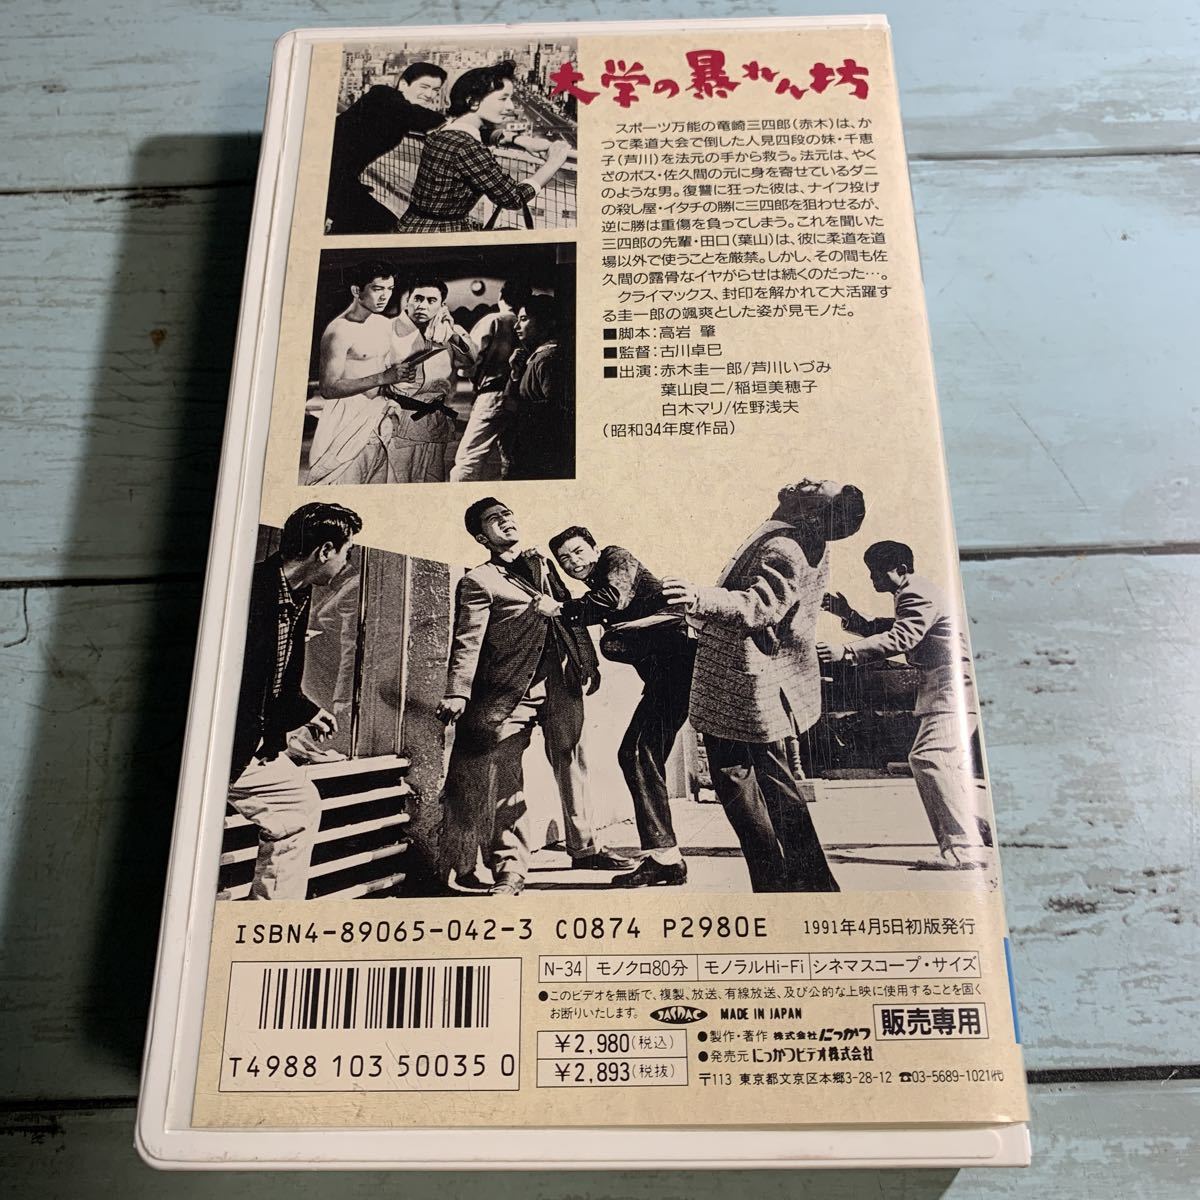 Yahoo!オークション - VHS 大学の暴れん坊(1959) 赤木圭一郎/芦川いづみ